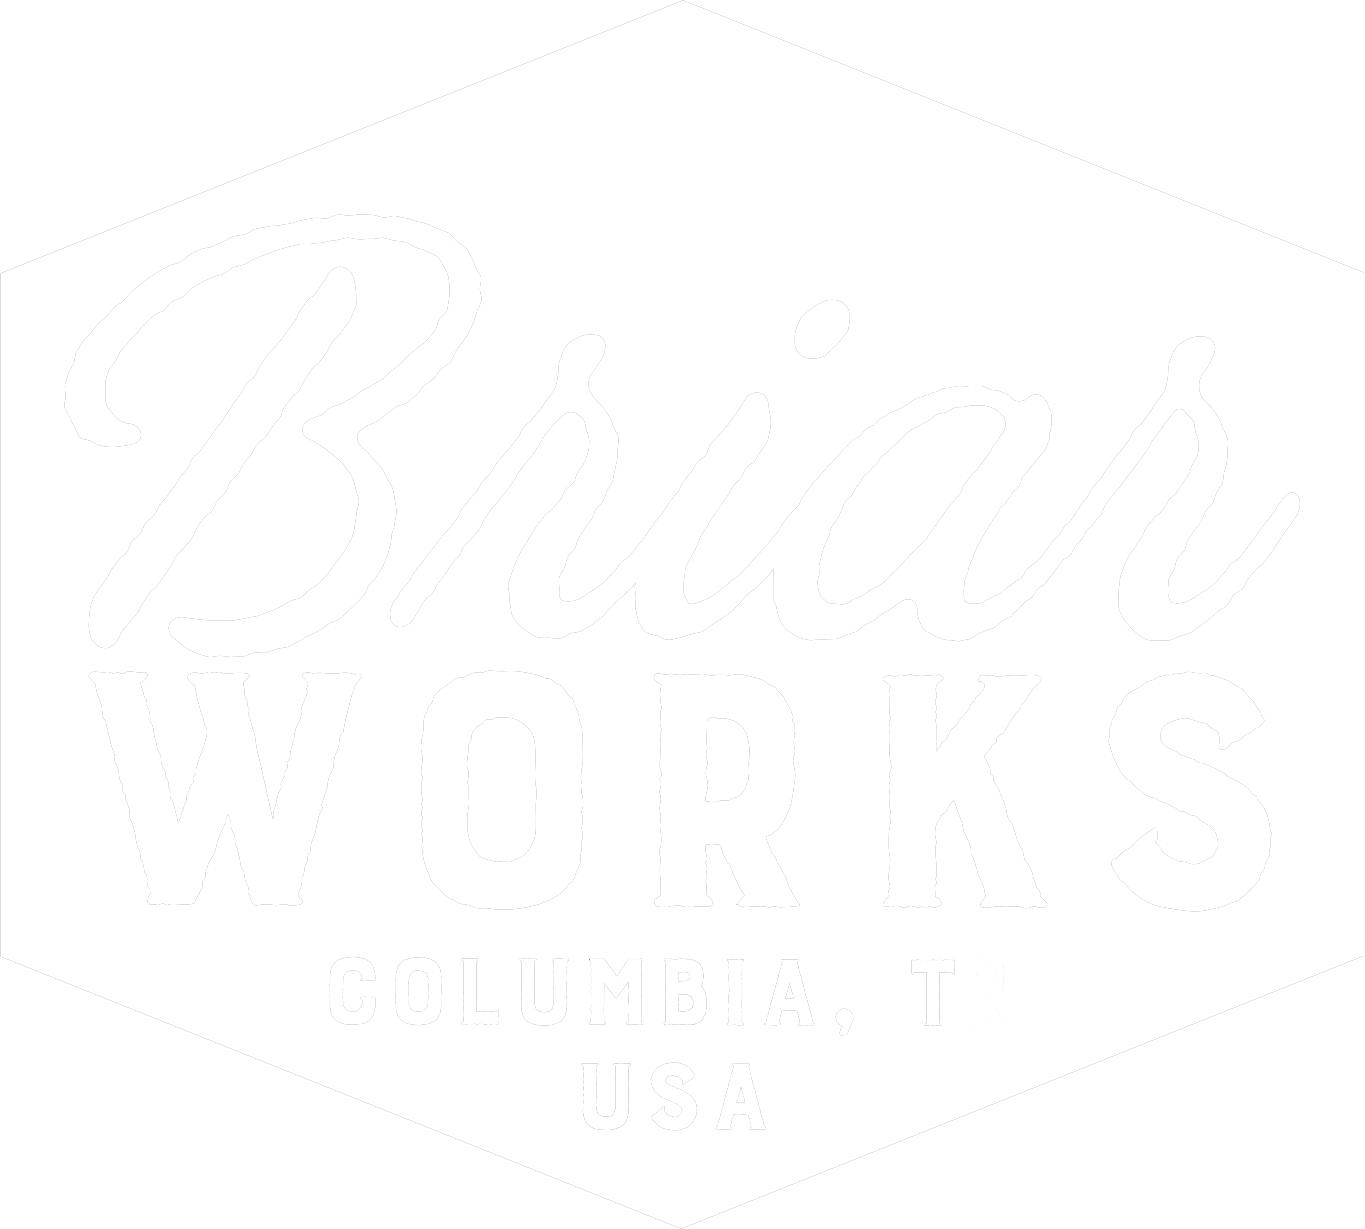 briarworksusa.com